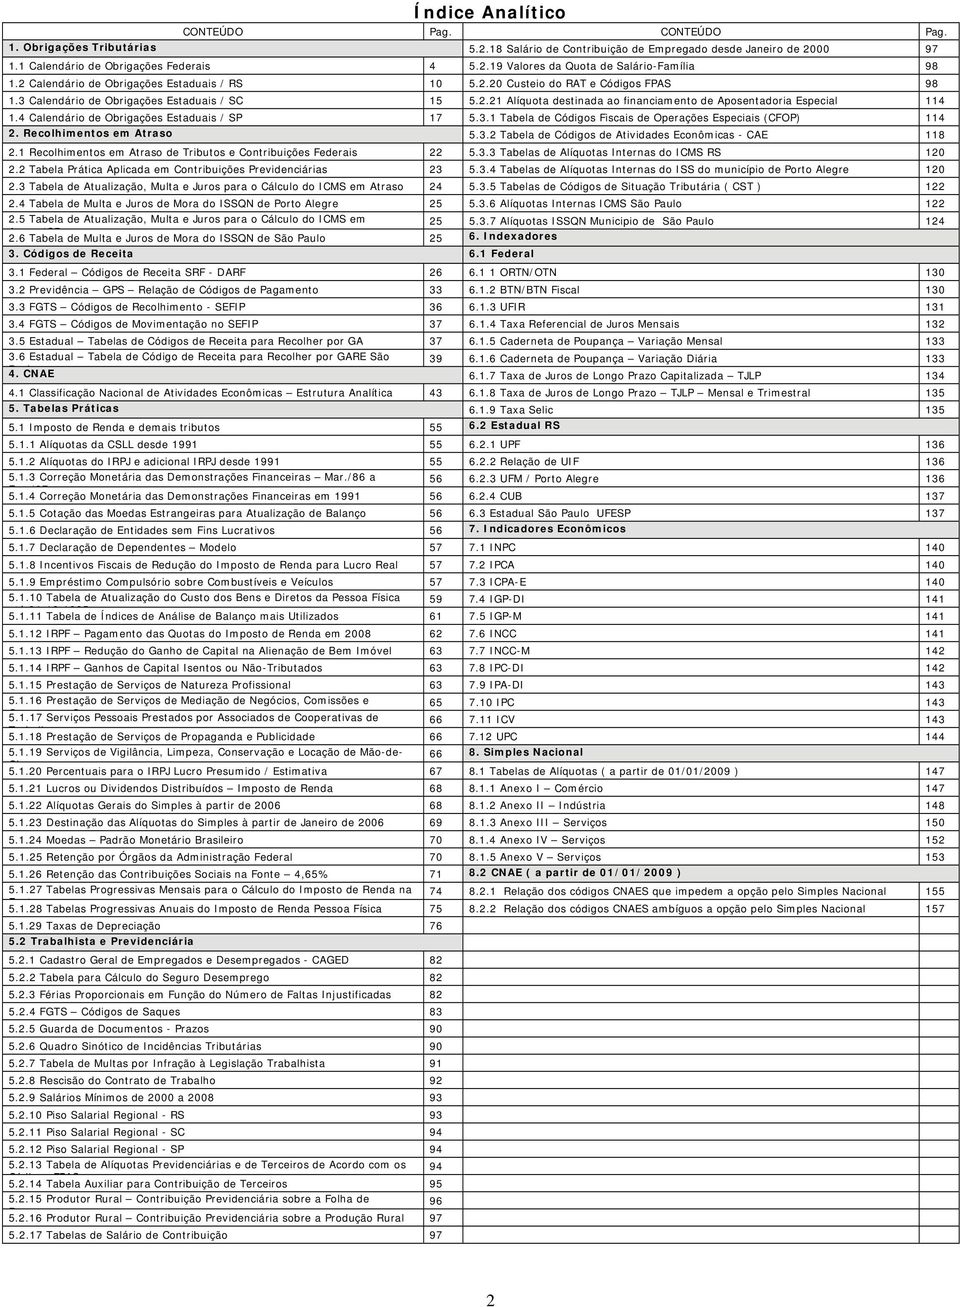 4 Calendário de Obrigações Estaduais / SP 17 5.3.1 Tabela de Códigos Fiscais de Operações Especiais (CFOP) 114 2. Recolhimentos em Atraso 5.3.2 Tabela de Códigos de Atividades Econômicas - CAE 118 2.